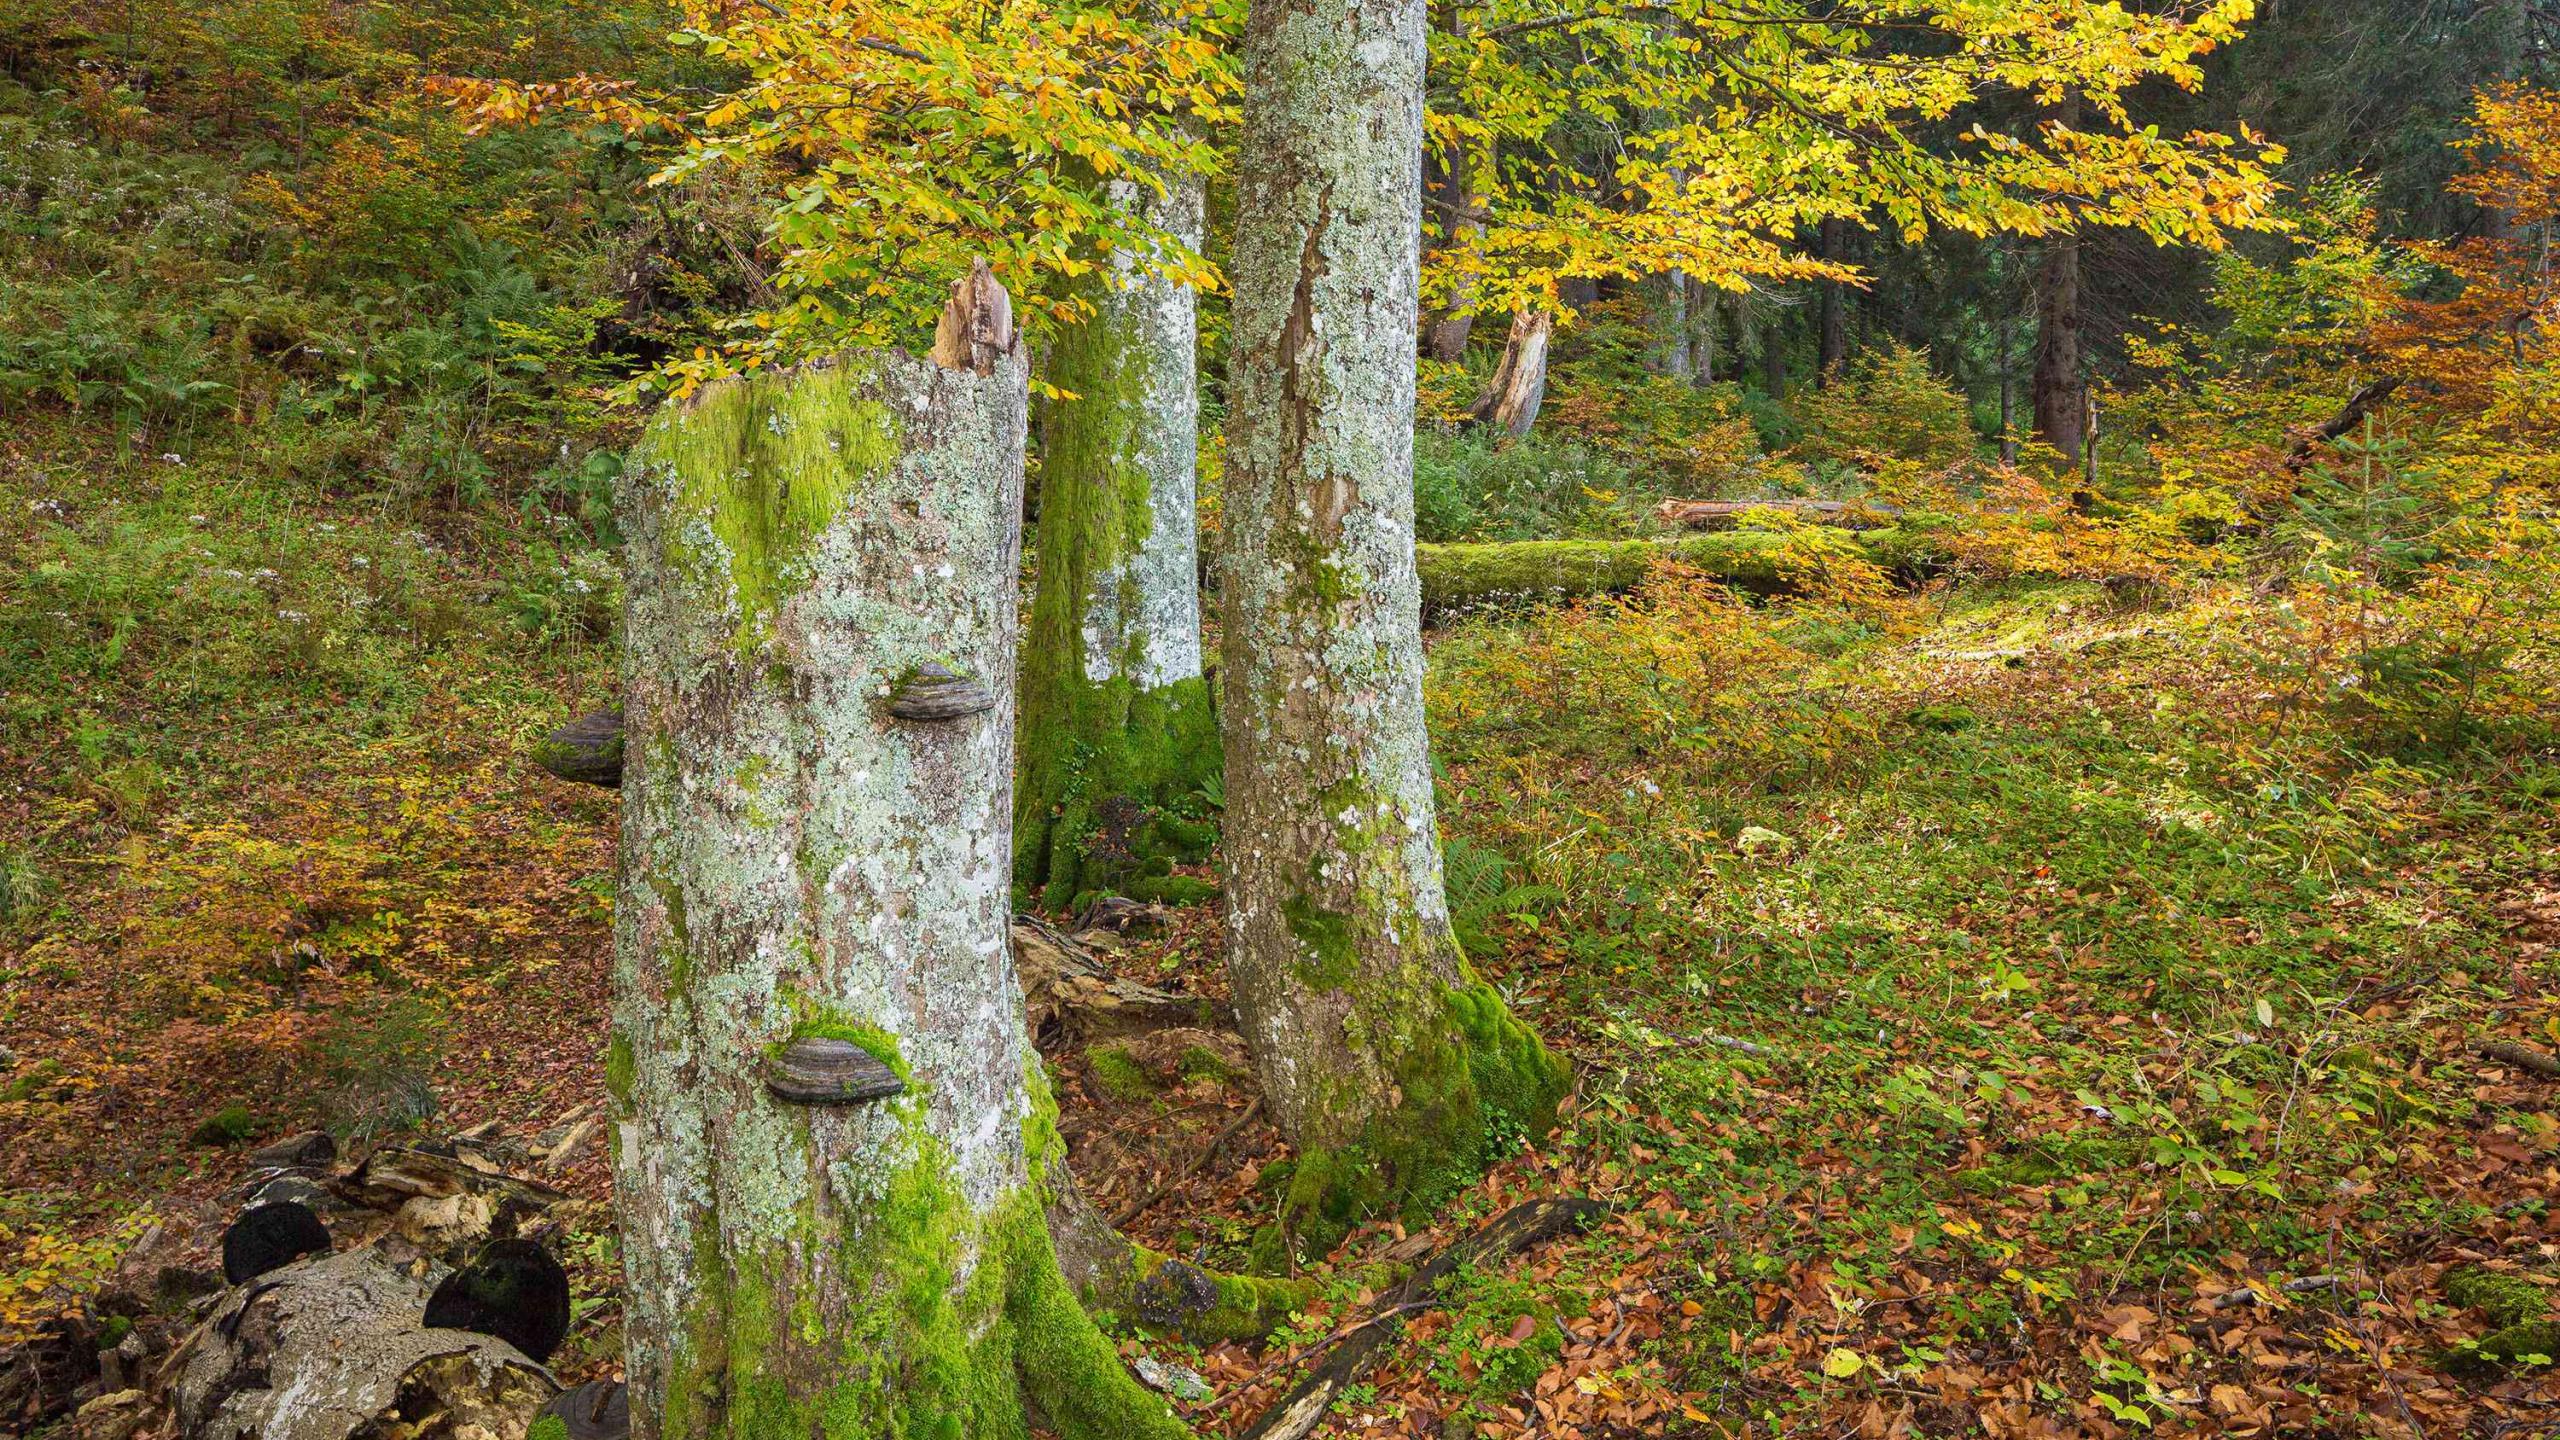 Podzimní bukový les se žluto-zeleno-oranžově zbarveným listím, v popředí stojící mrtvé dřevo s houbami